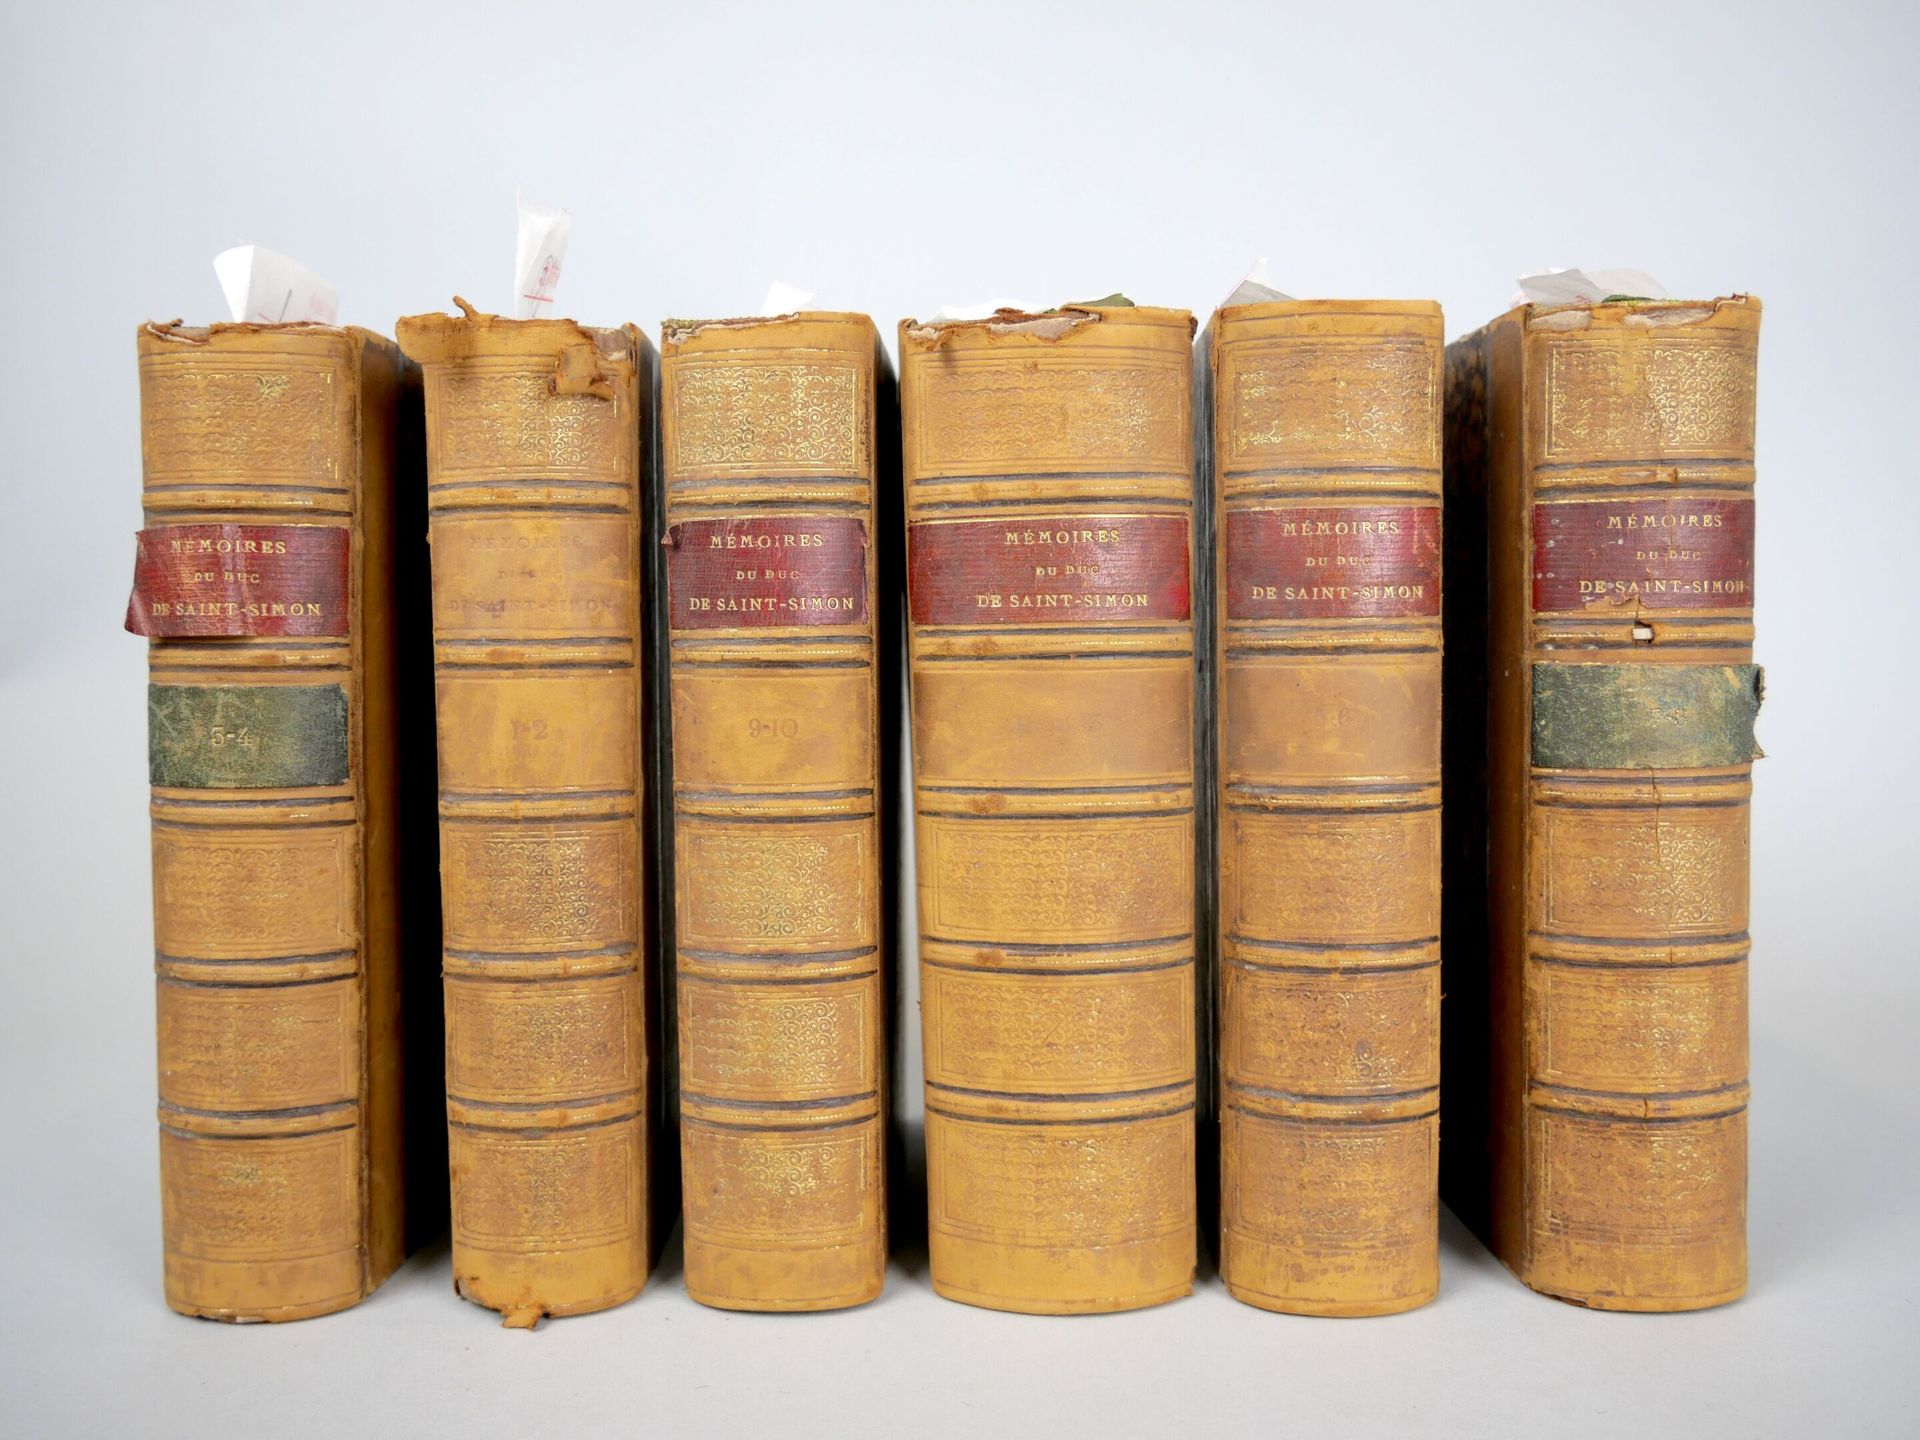 Null [MEMOIRS]
Serie di 6 volumi, che raggruppa 13 volumi.
Memorie complete e au&hellip;